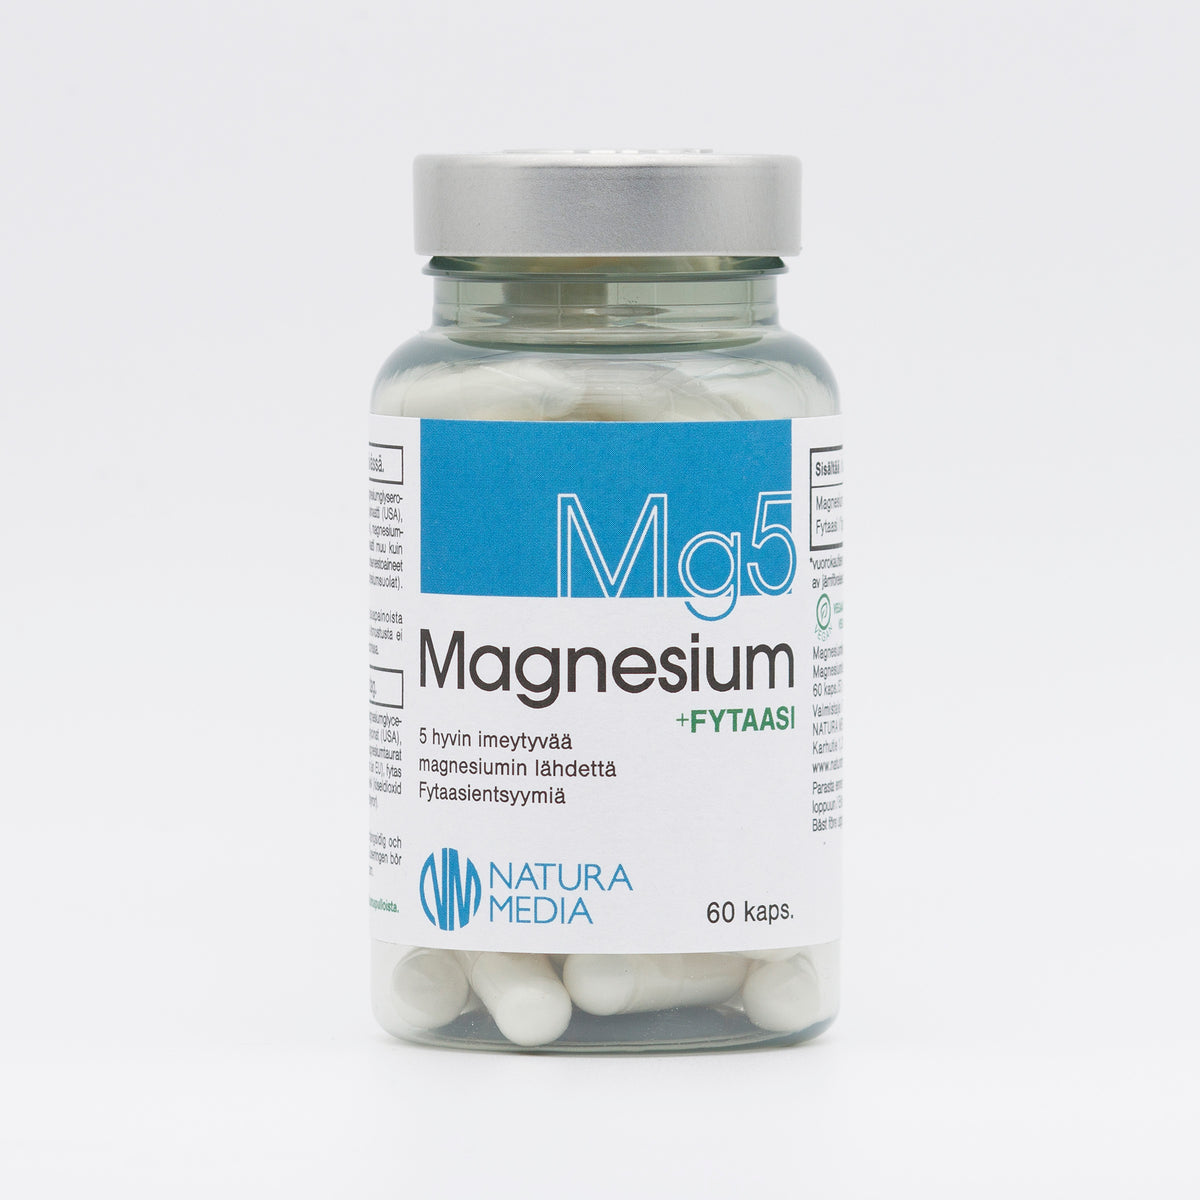 Natura Media Mg5 Magnesium + Fytaasi 60 kaps.